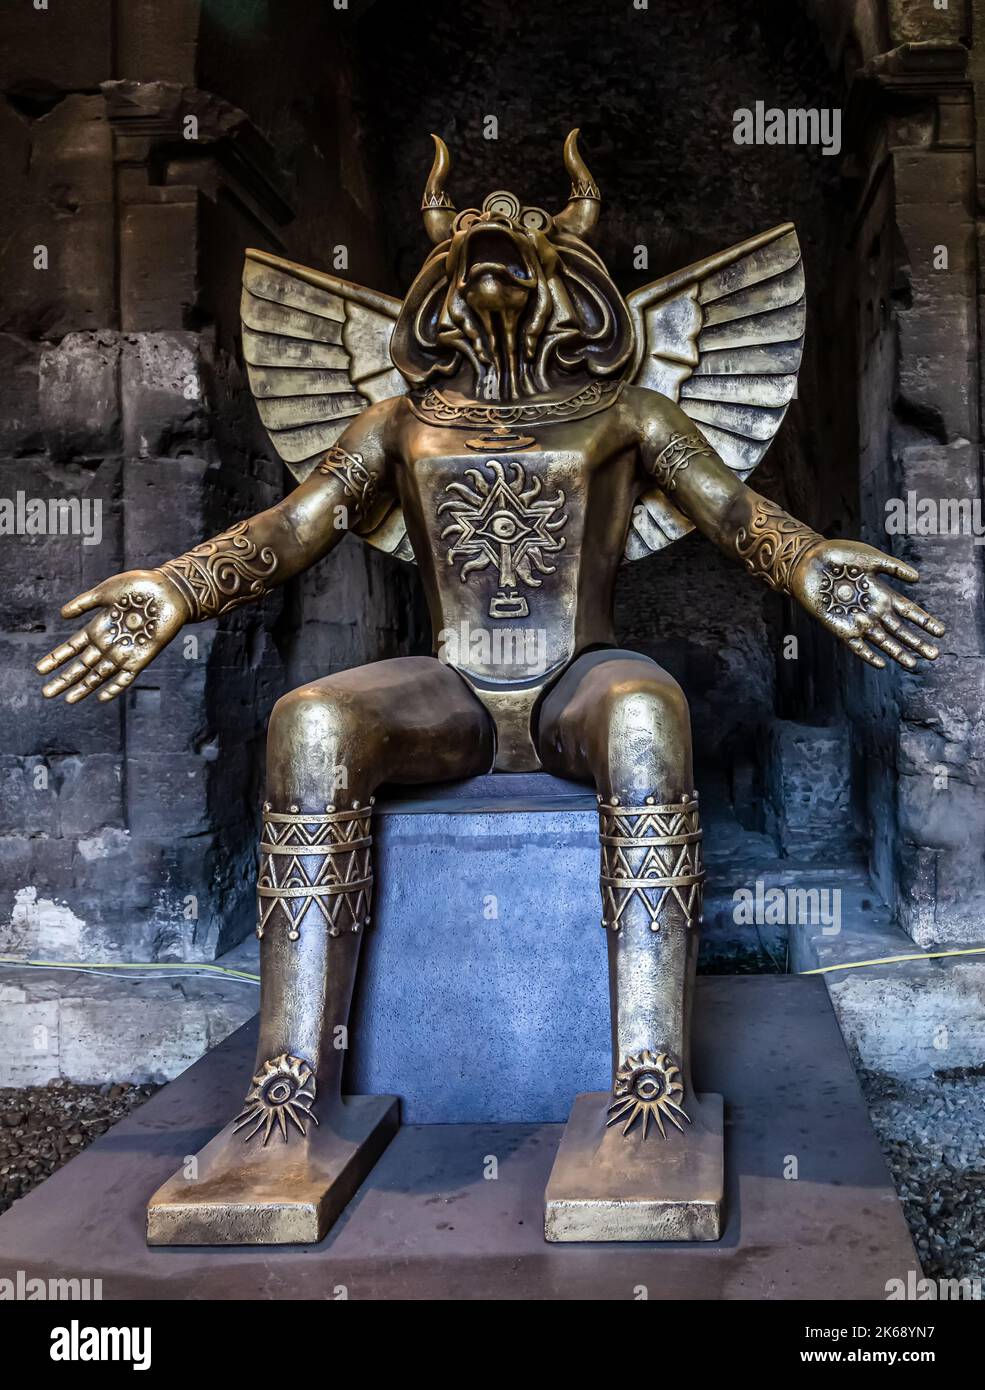 ROME, ITALIE - 01 DÉCEMBRE 2019 : statue du dieu païen Moloch (Molech) placée à l'entrée du Colisée de Rome, Italie Banque D'Images